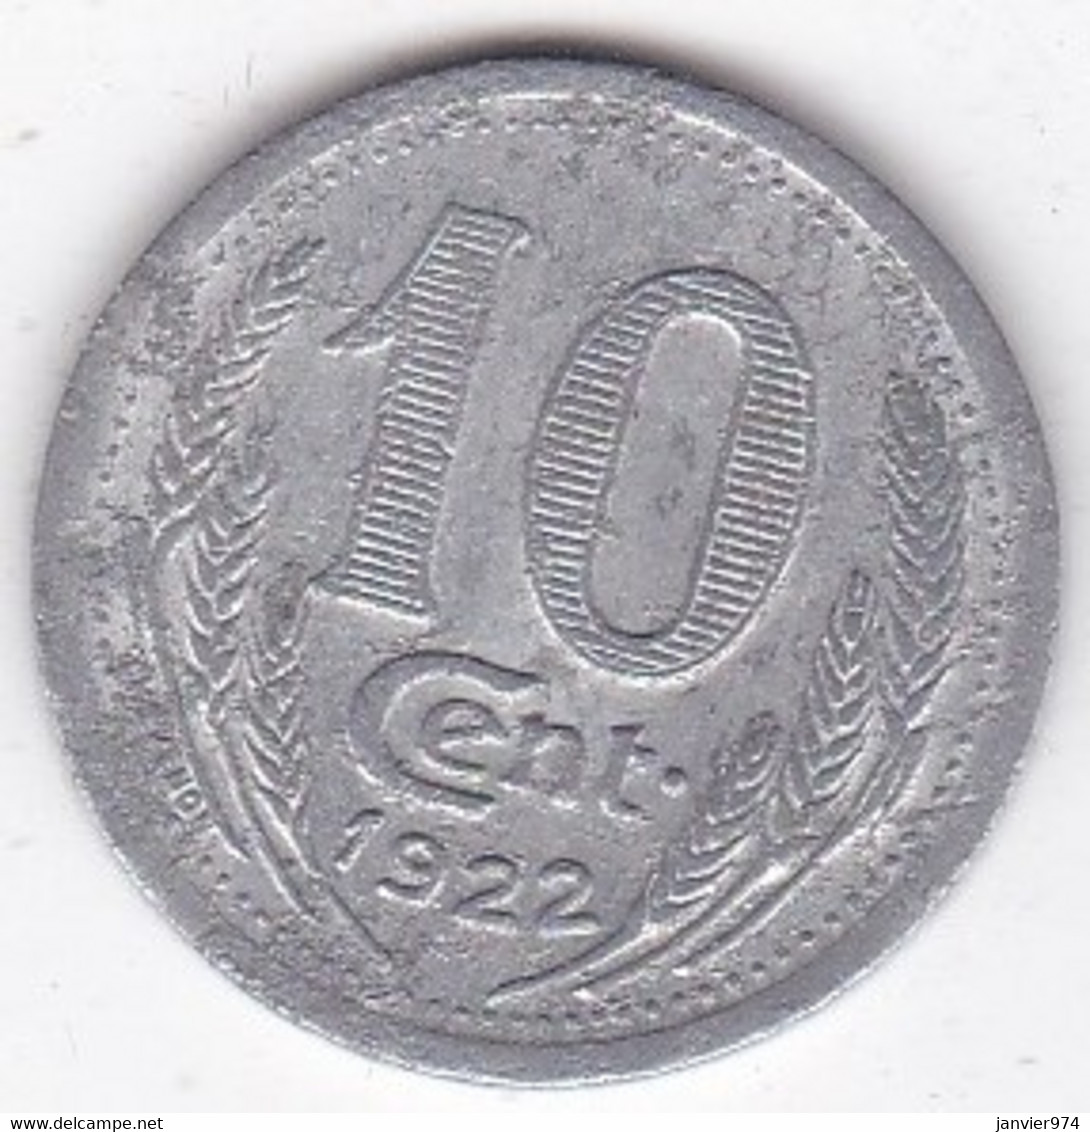 28. Eure Et Loire. Chambre De Commerce. 10 Centimes 1922, En Aluminium - Notgeld